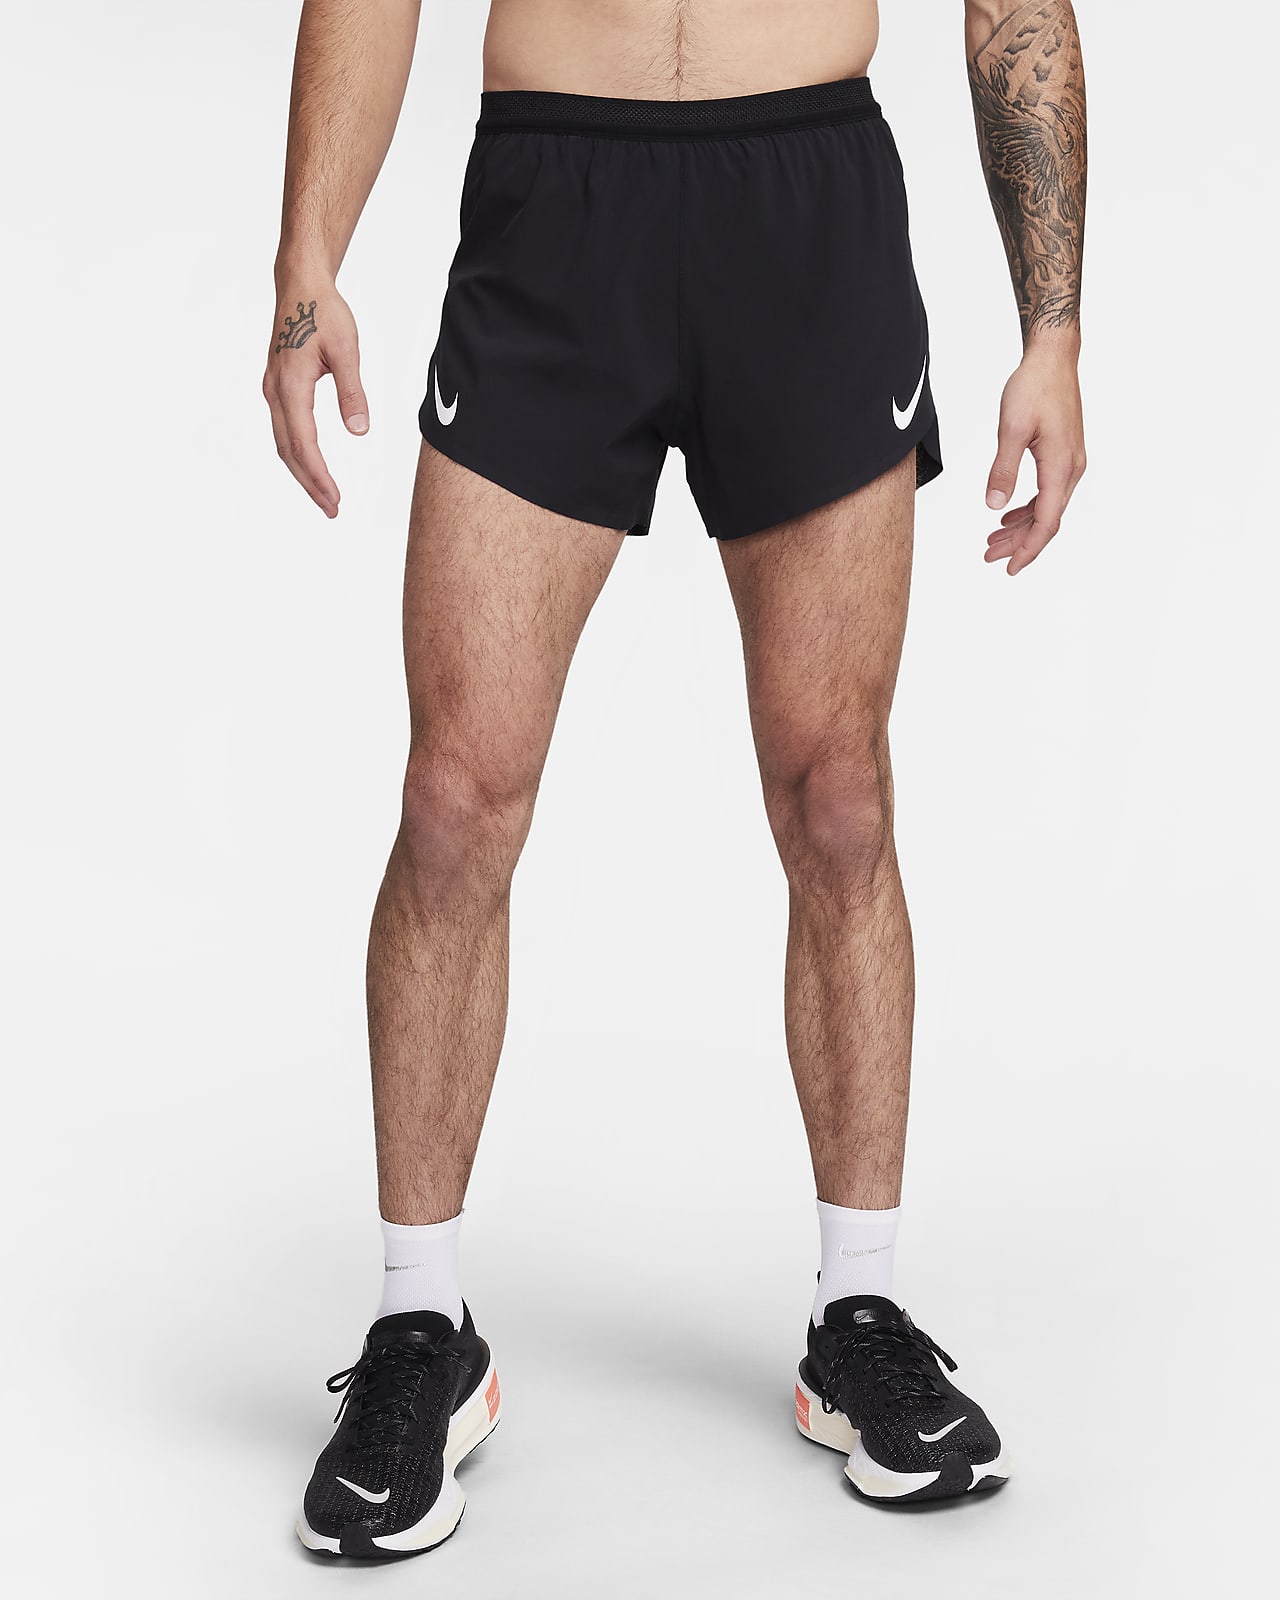 Short de running avec sous-short intégré 10 cm Dri-FIT ADV Nike AeroSwift pour homme